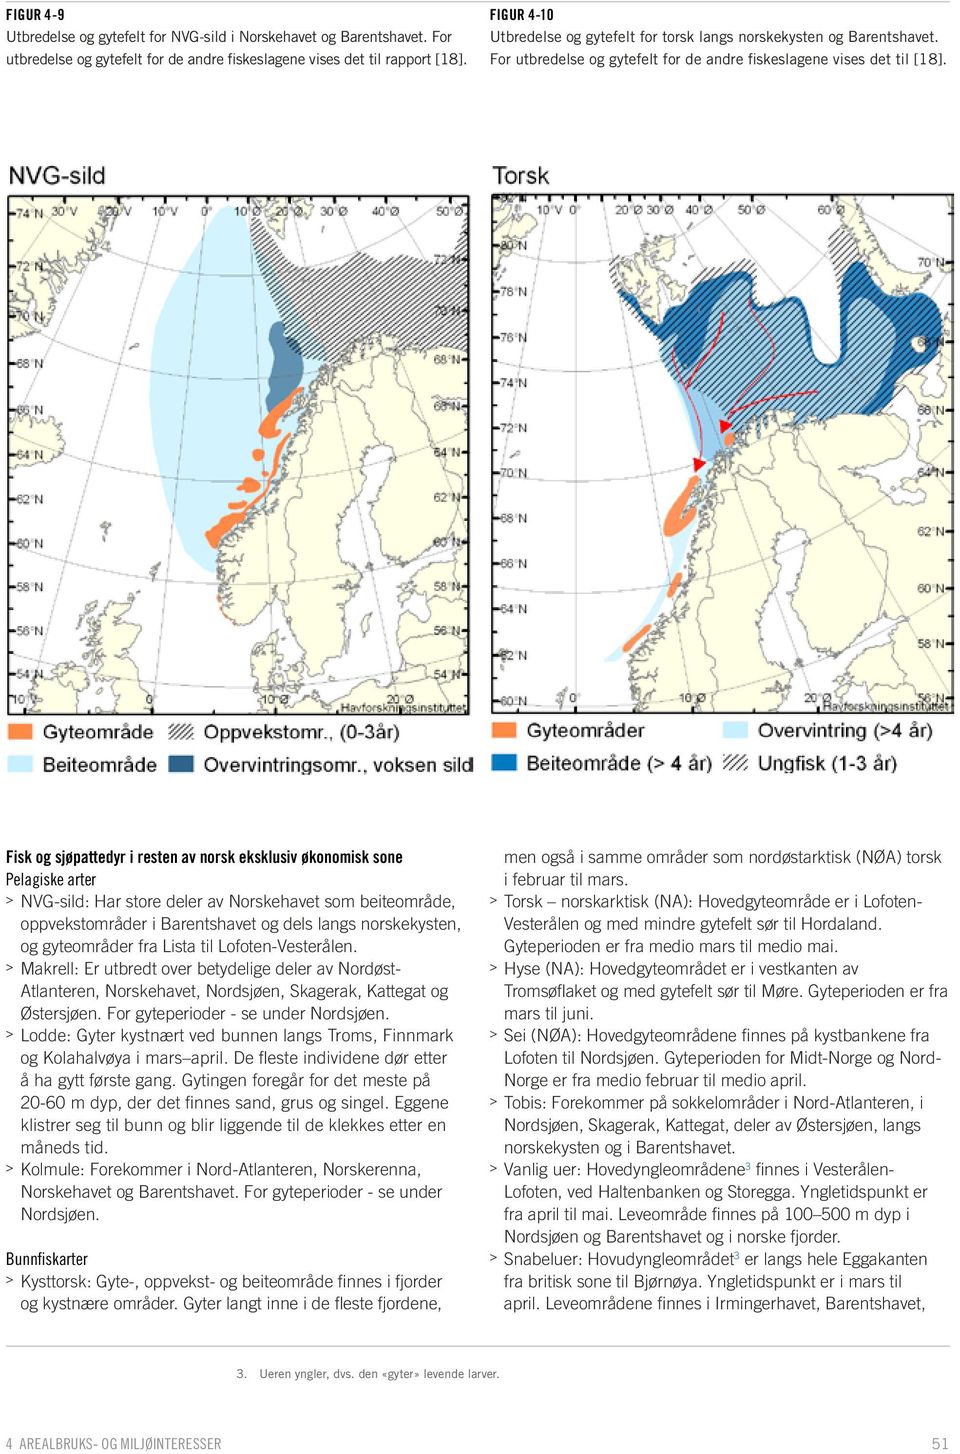 Fisk og sjøpattedyr i resten av norsk eksklusiv økonomisk sone Pelagiske arter > > NVG-sild: Har store deler av Norskehavet som beiteområde, oppvekstområder i Barentshavet og dels langs norskekysten,